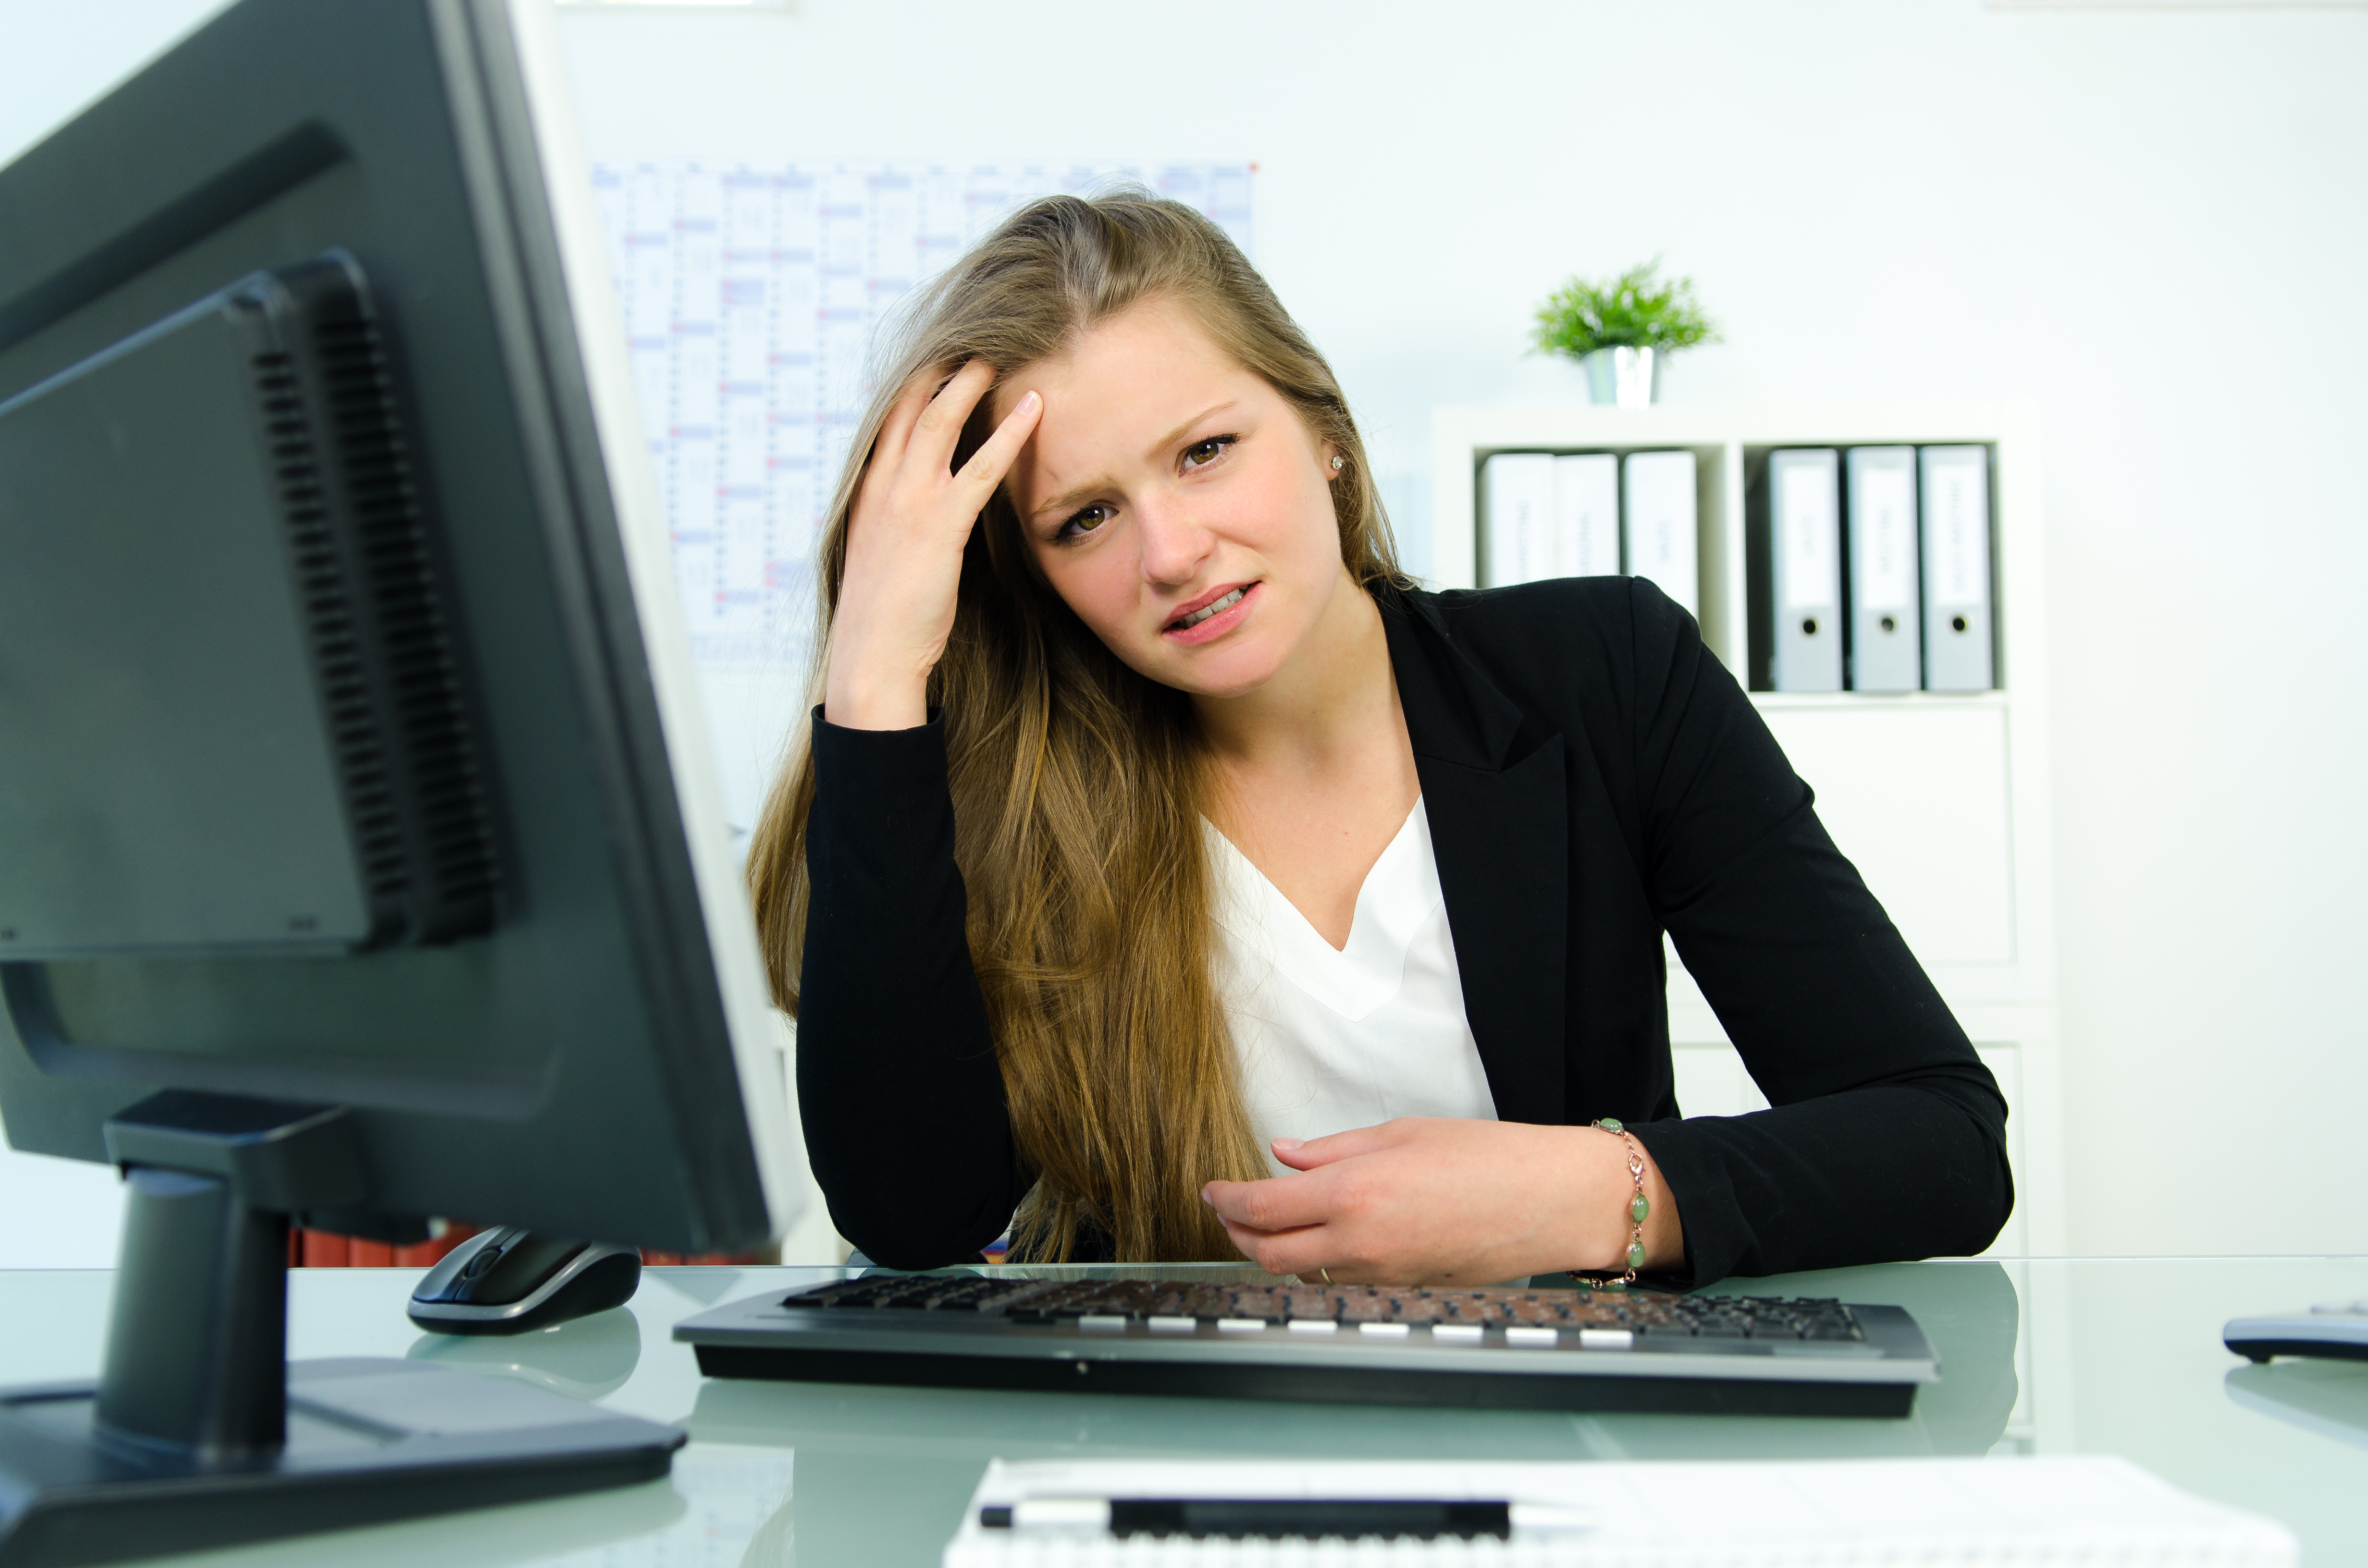 Les femmes plus sensibles au stress?